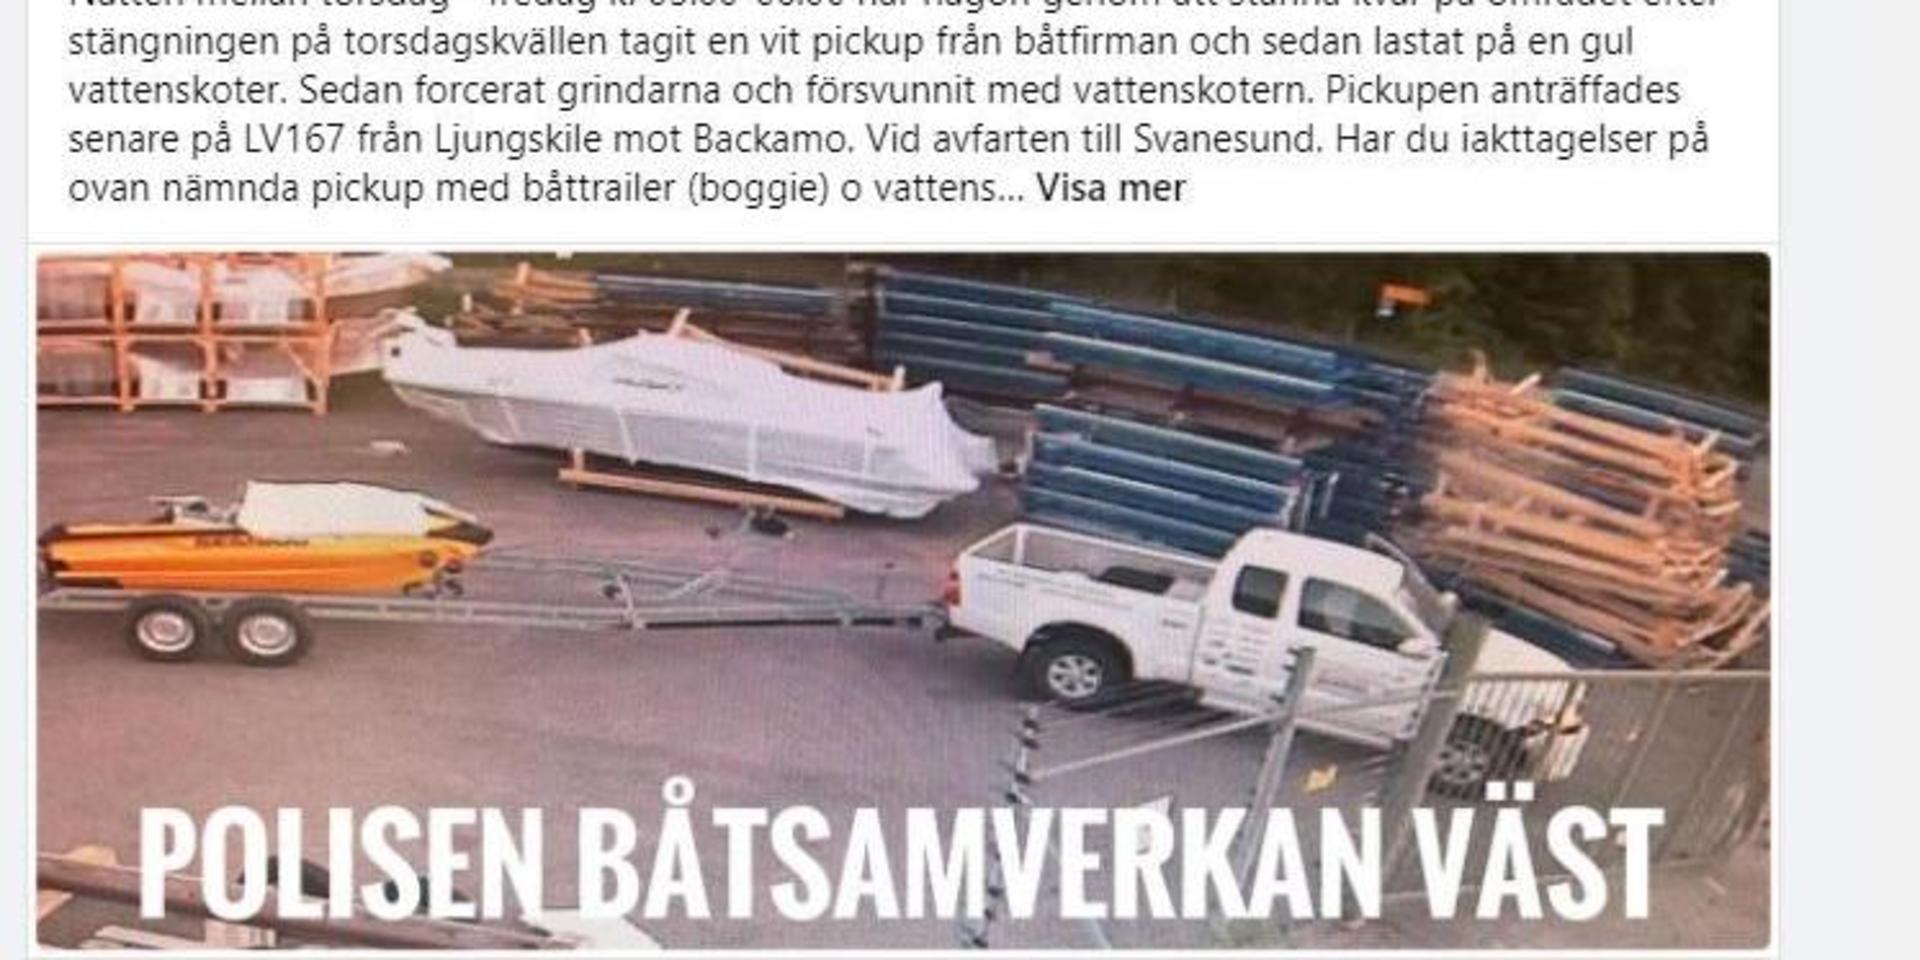 Polisens Båtsamverkan Väst har publicerat en bild från en övervakningskamera, som visar hur en pickup lastad med en vattenskoter stjäls från en båtfirma i Uddevalla.